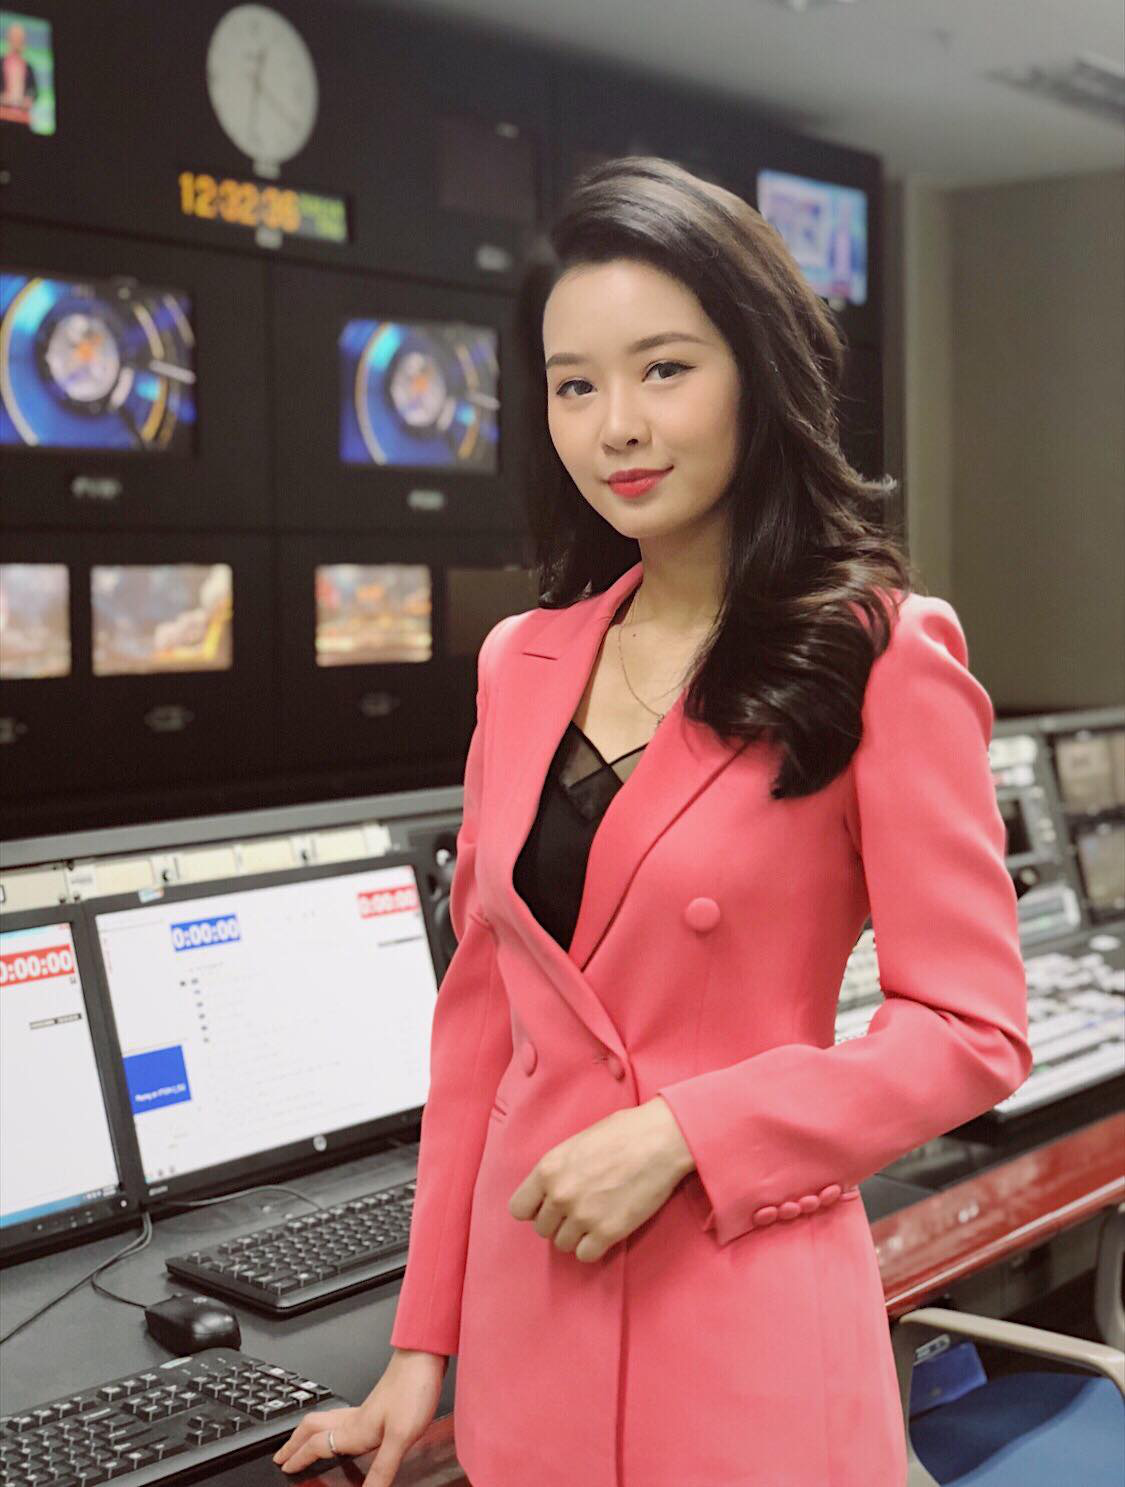 Minh Hằng được biết đến là nữ BTV dày dặn kinh nghiệm của bản tin Tài chính Kinh doanh. Người đẹp 8x sở hữu vẻ ngoài dễ thương, tươi tắn, thậm chí còn được mệnh danh là BTV có gương mặt trẻ nhất của Trung tâm tin tức VTV24.